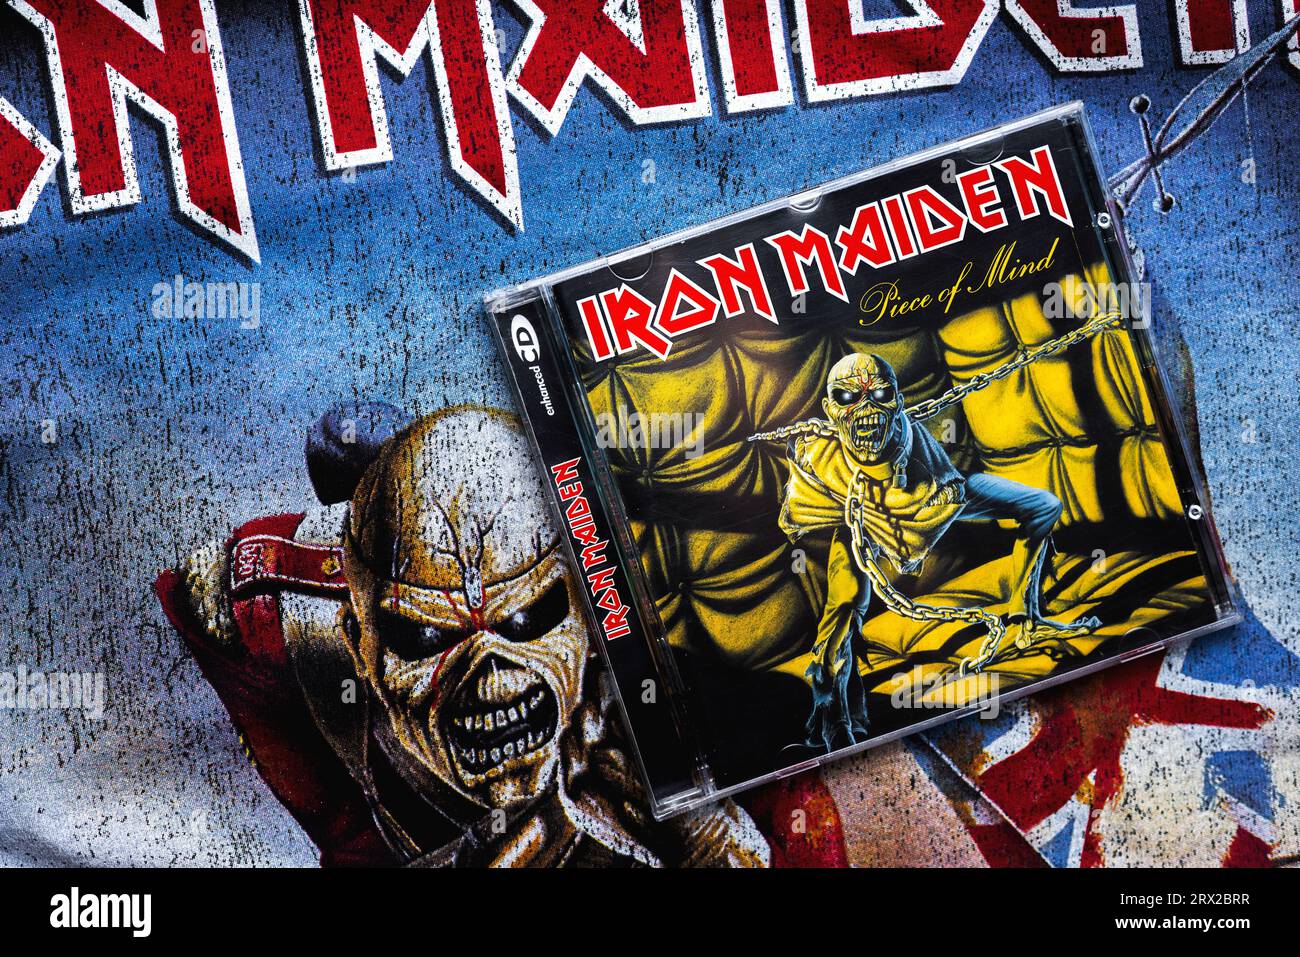 Nahaufnahme des Covers der Piece of Mind-CD von Iron Maiden auf einem T-Shirt mit dem Iron Maiden-Logo. Iron Maiden ist eine britische Heavy-Metal-Band Stockfoto